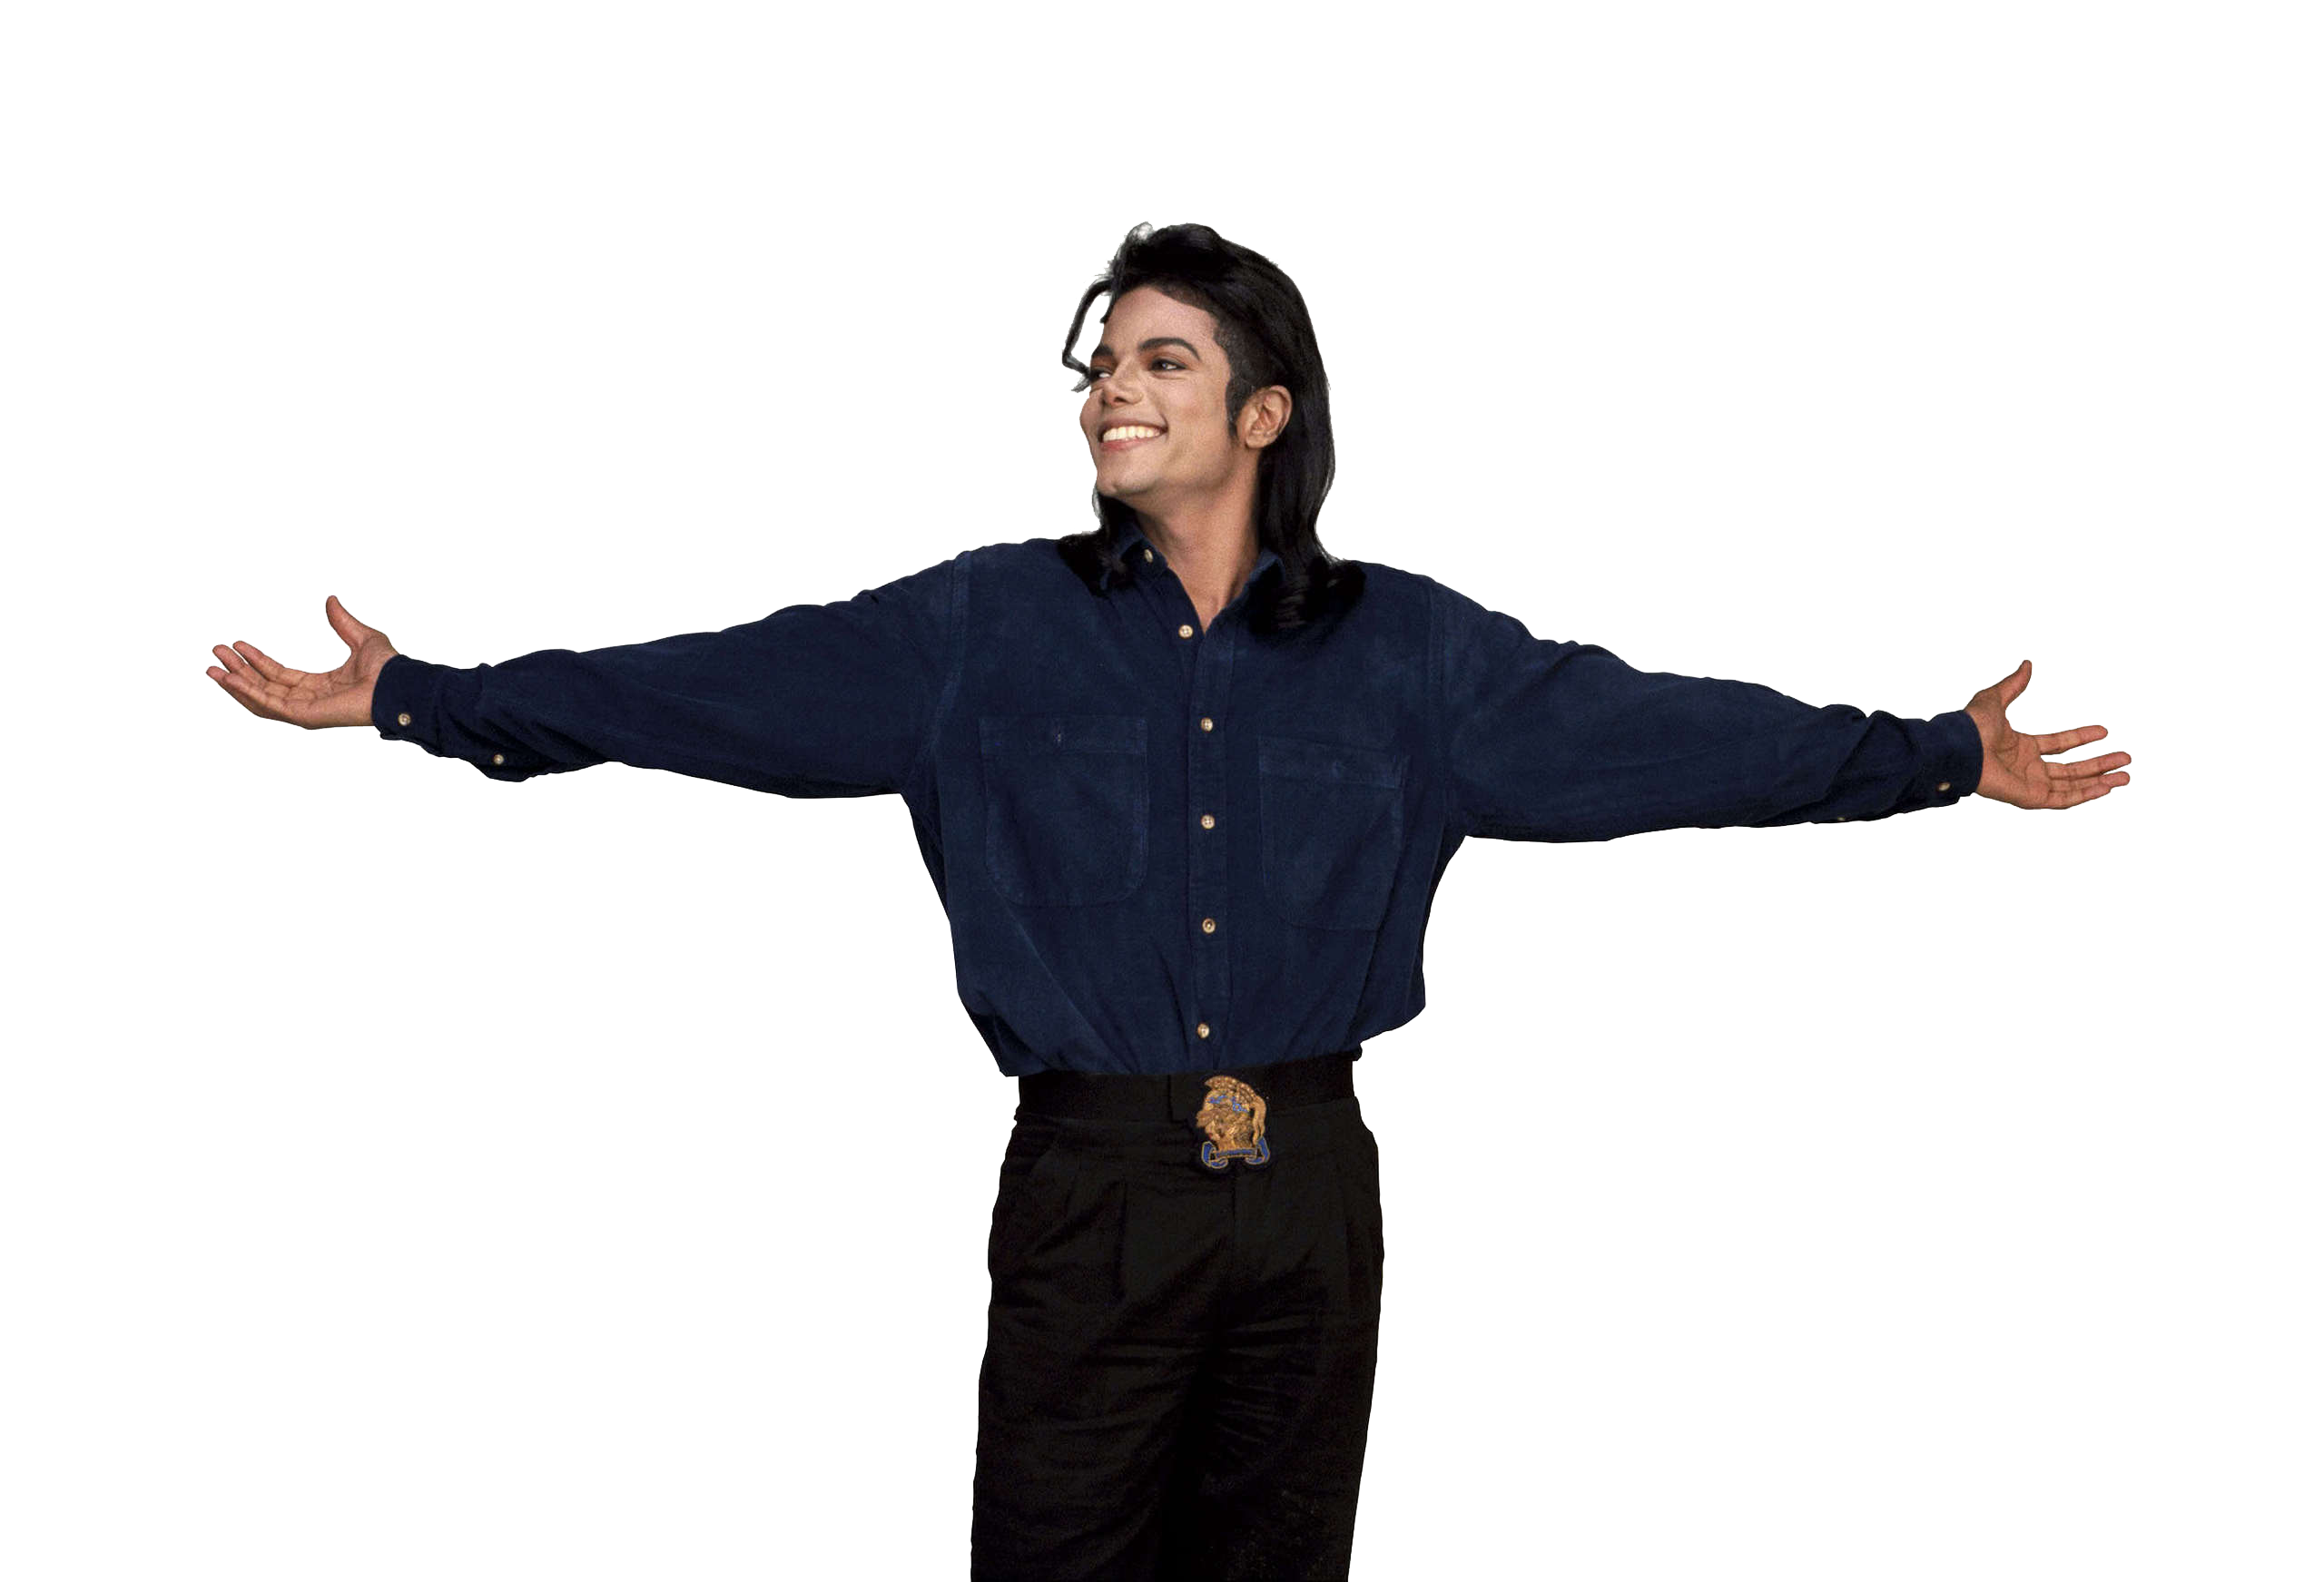 Michael Jackson PNG transparent image download, size: 263x400px